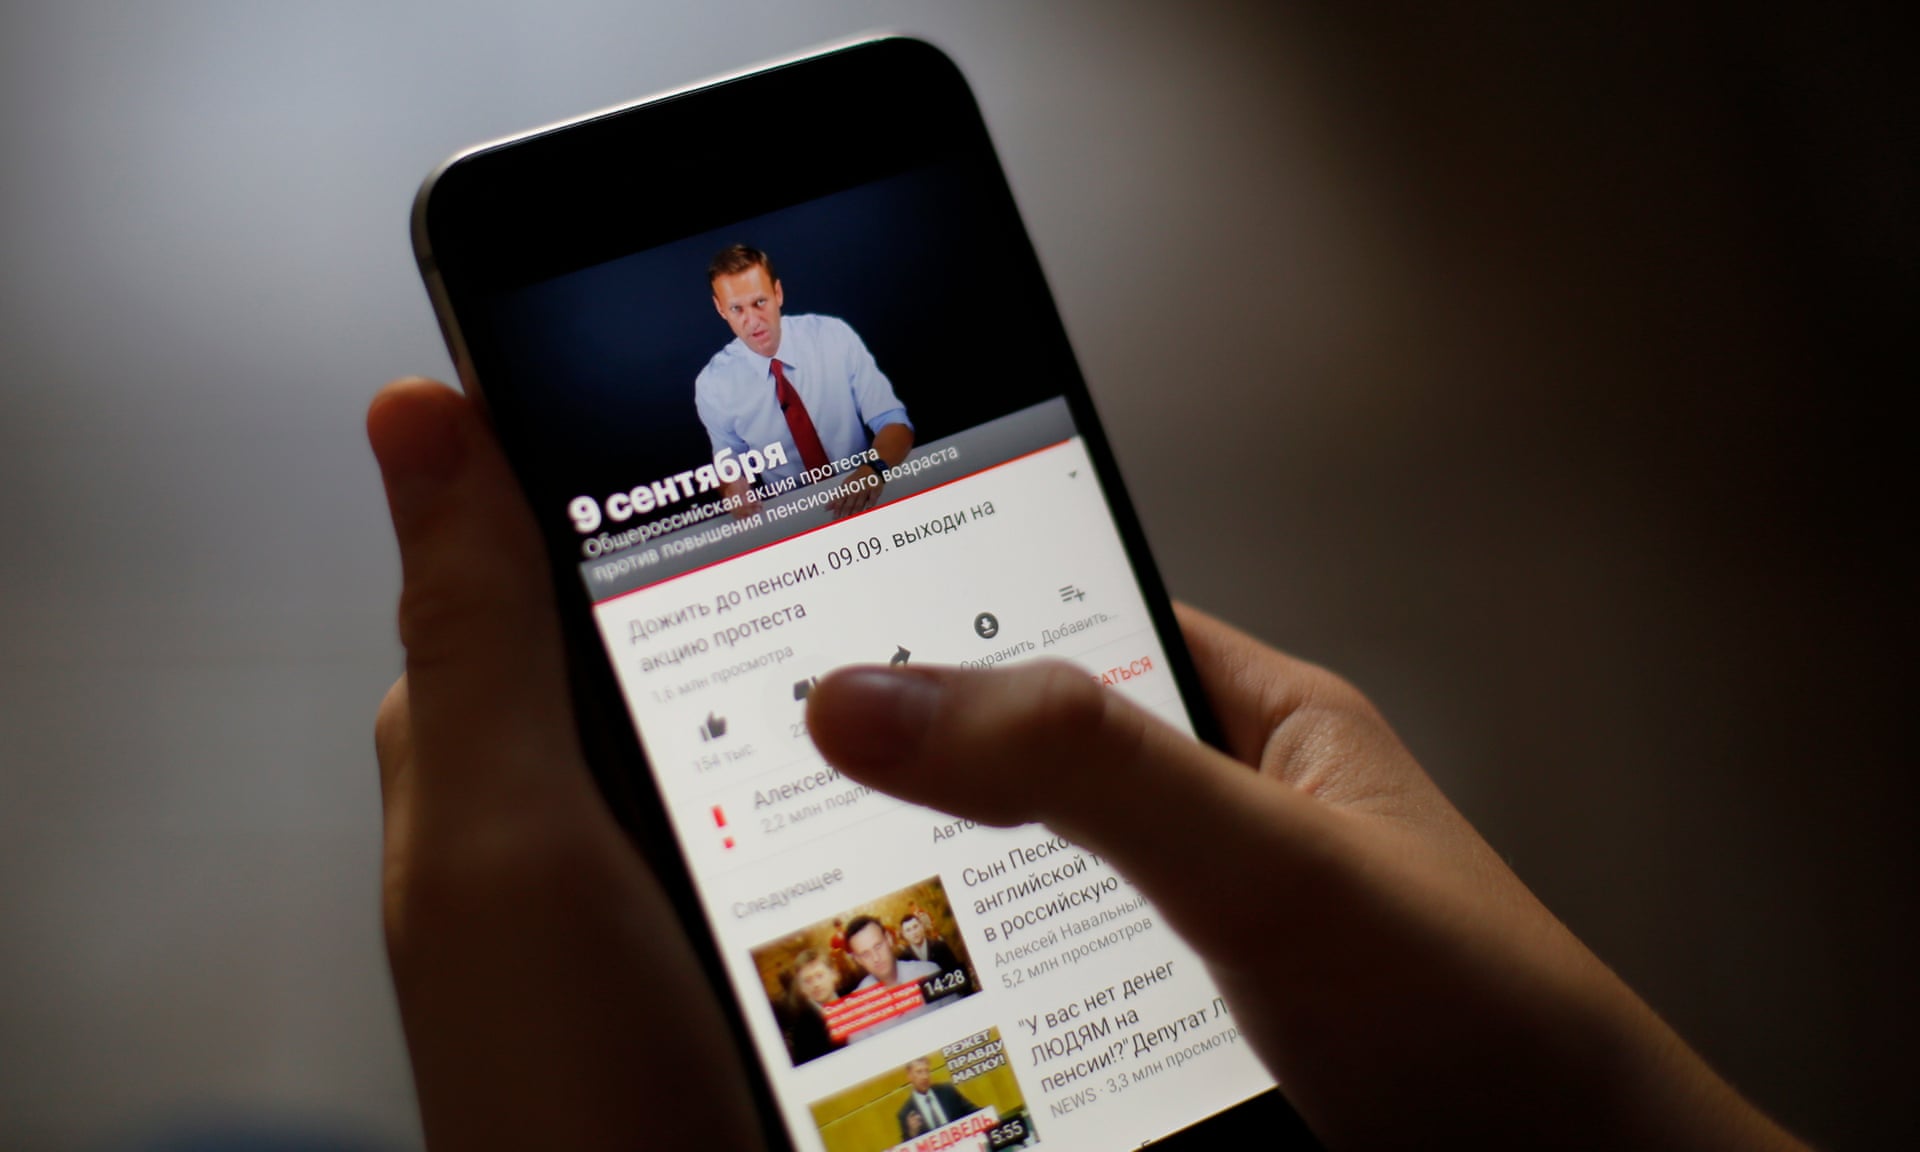 Rus lider Alexei Navalny YouTube reklamları kaldırıldı! - Shiftdelete.Net